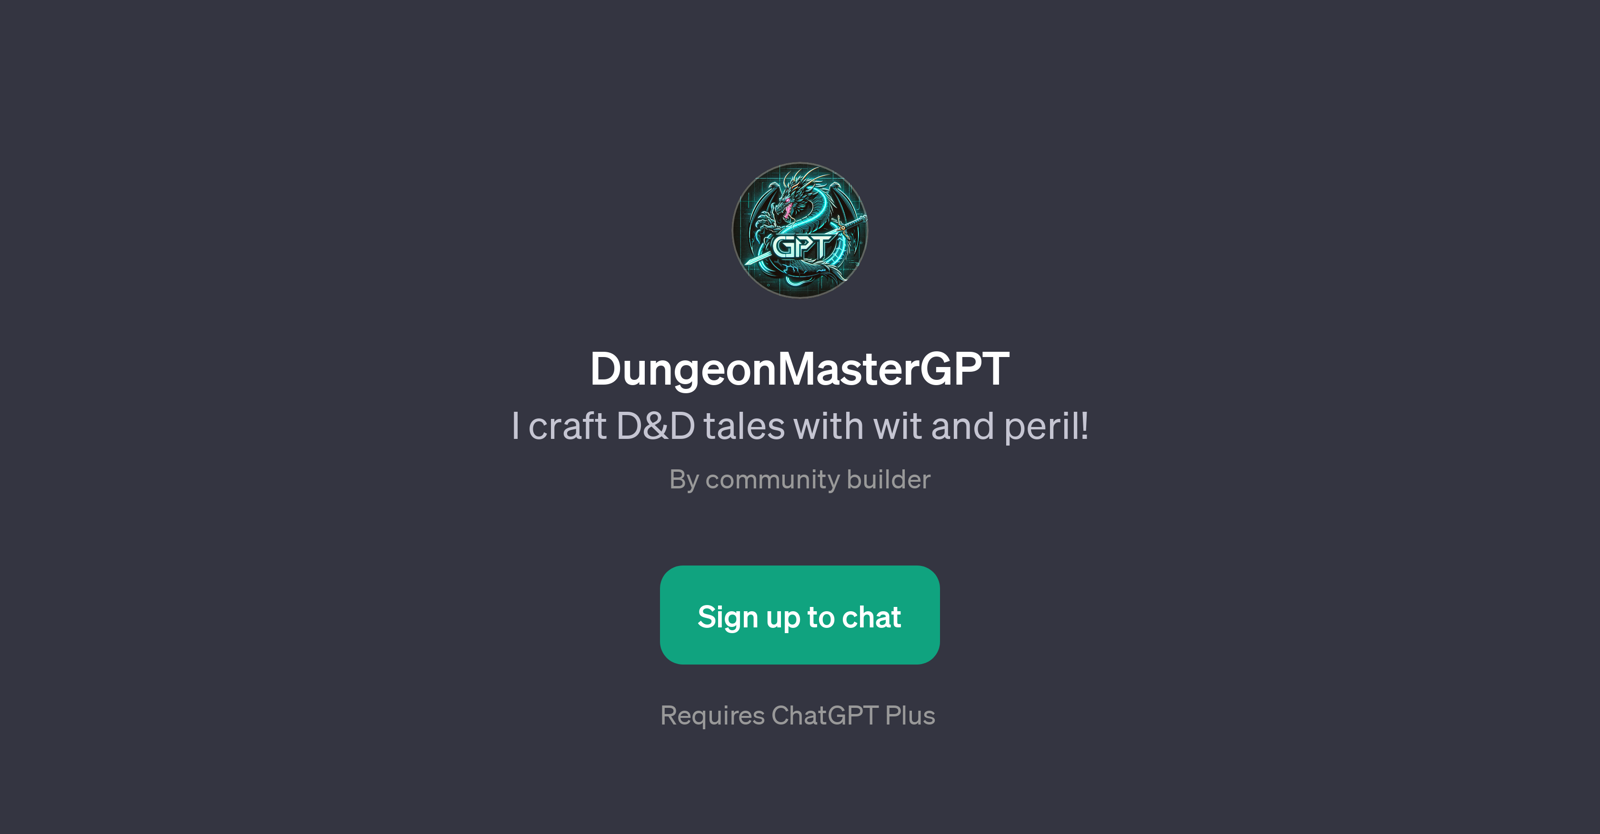 DungeonMasterGPT website